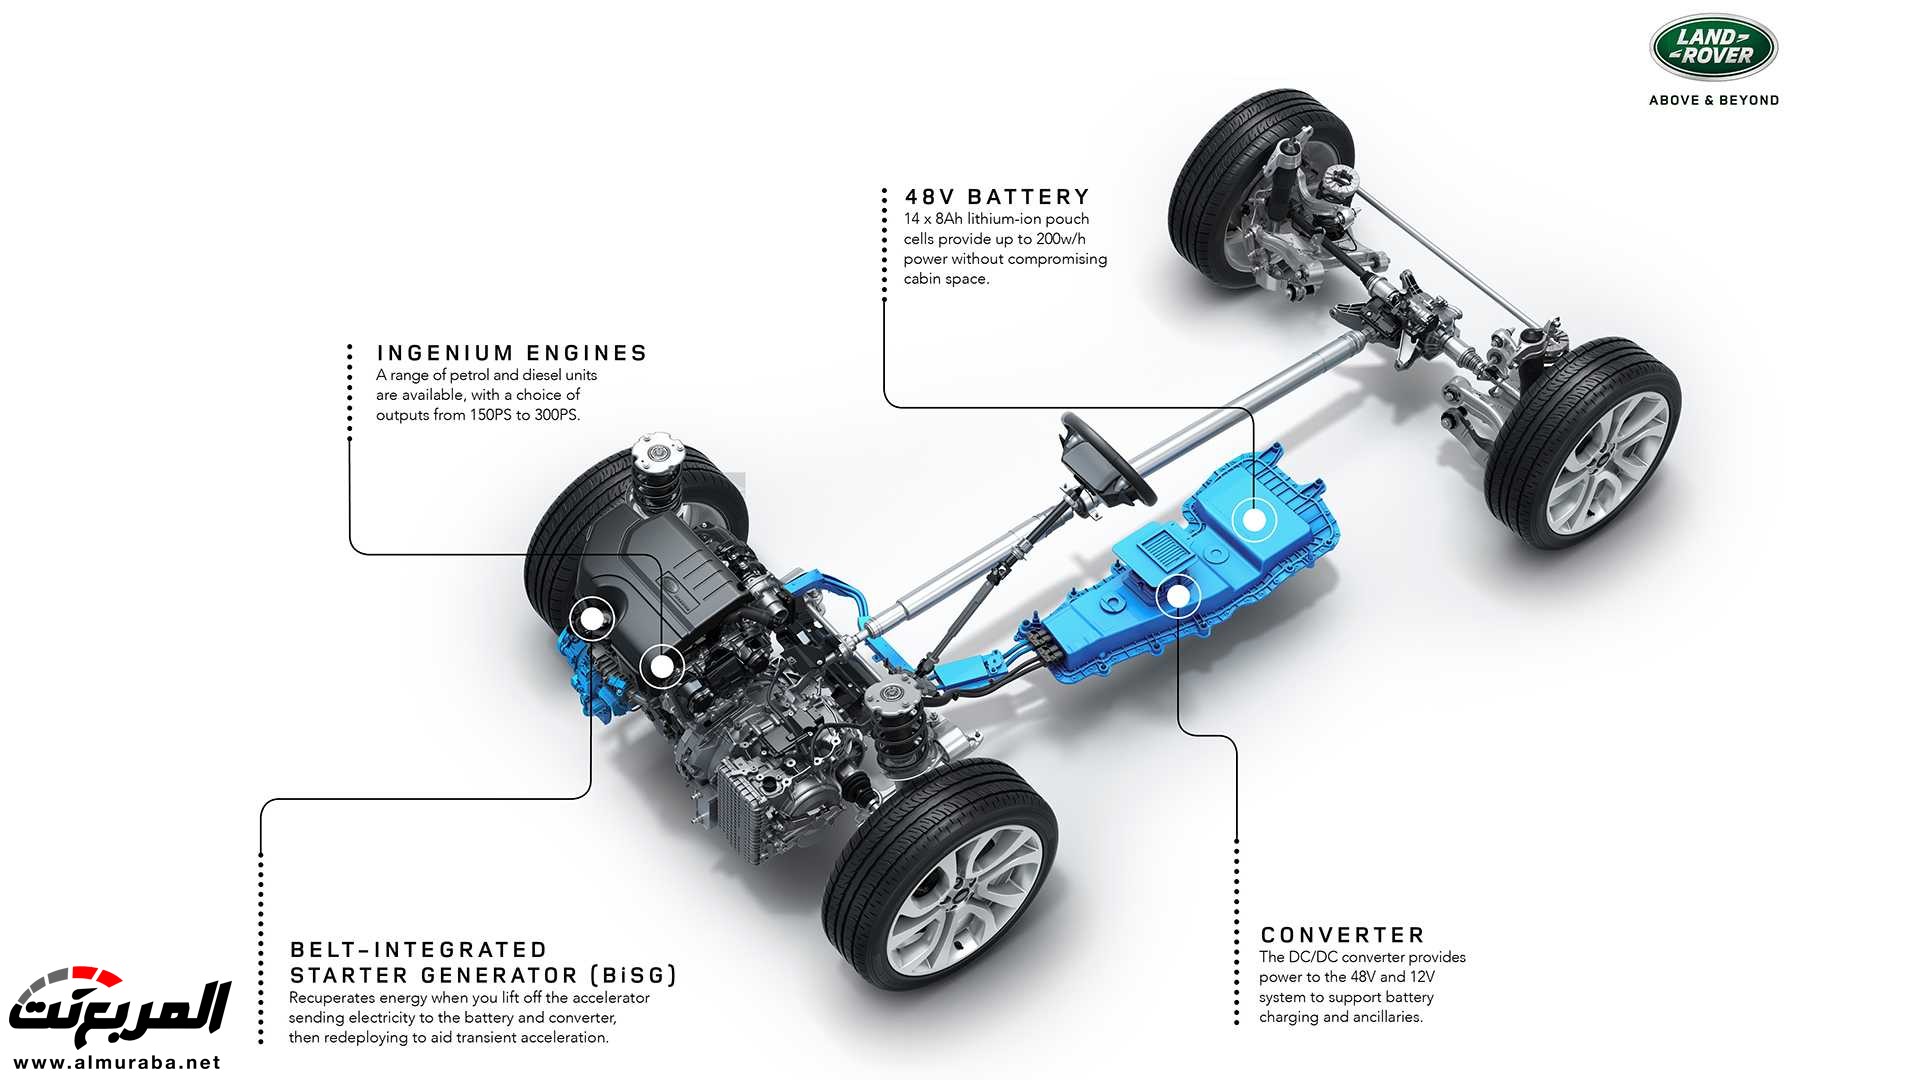 اهم 7 معلومات عن رنج روفر ايفوك 2020 الجديدة كلياً Range Rover Evoque 67